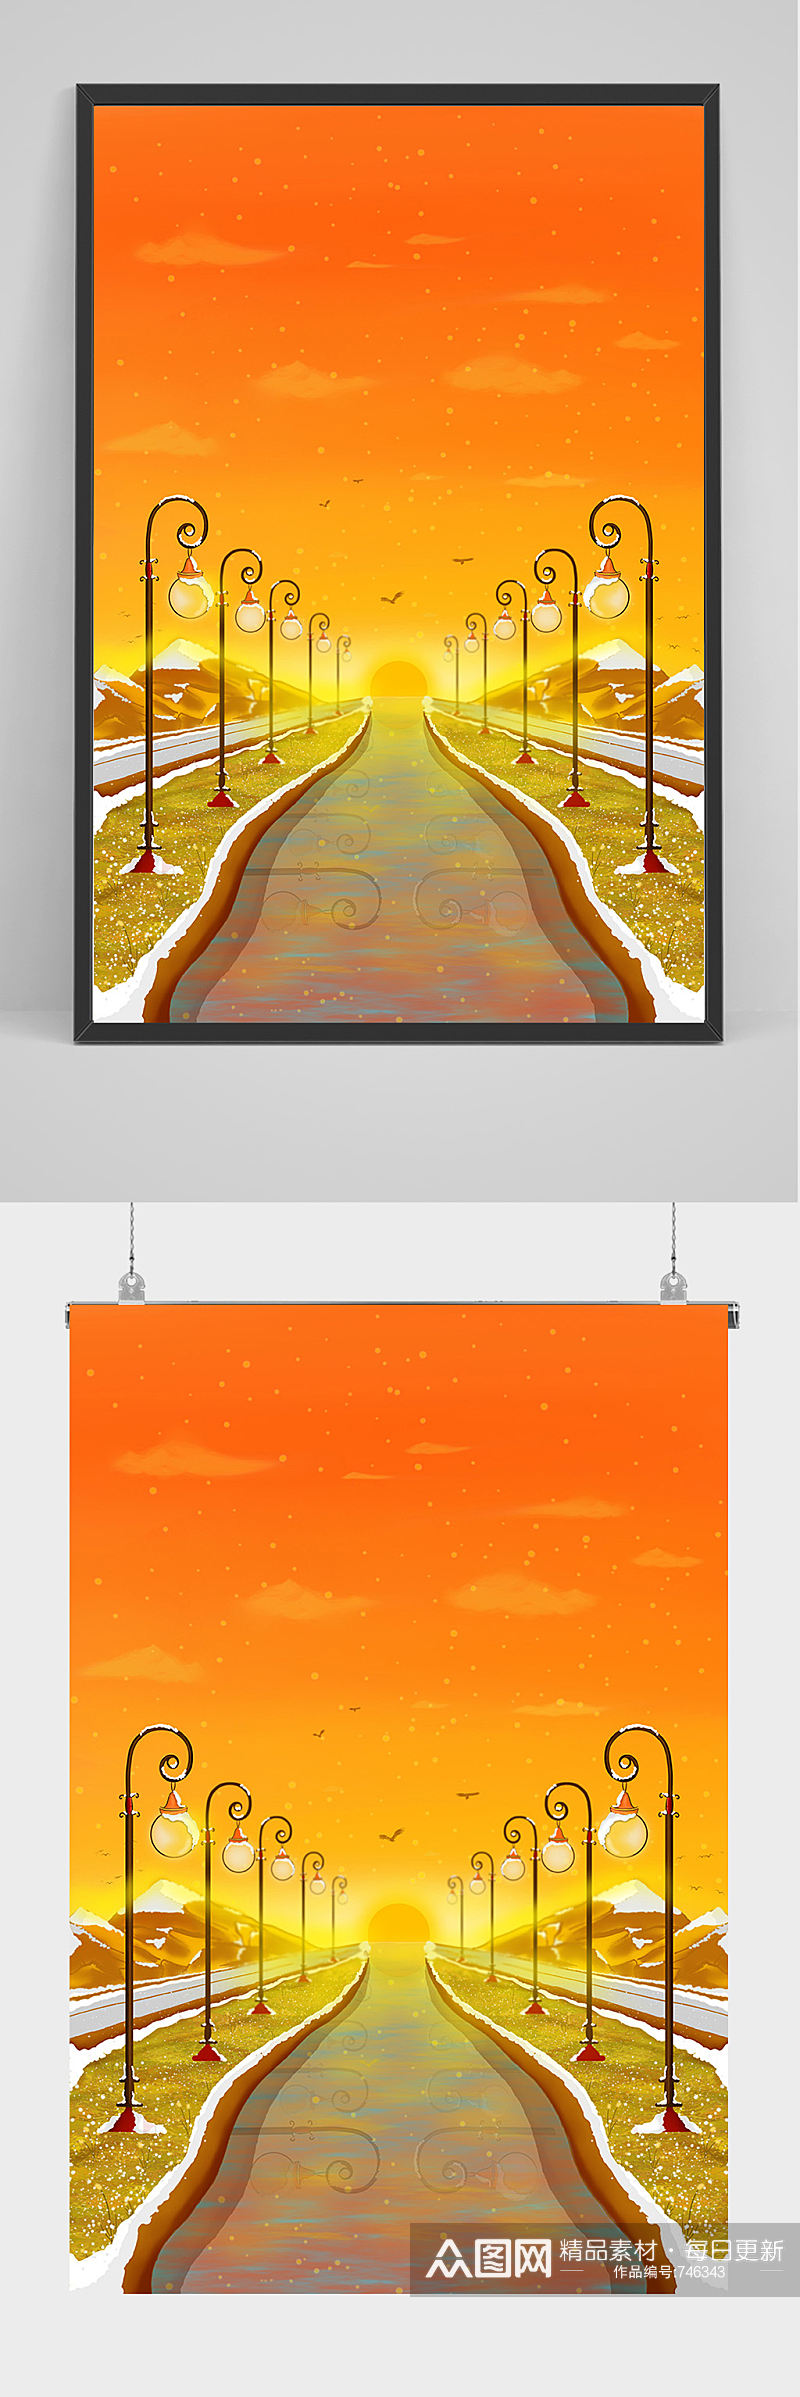 手绘夕阳下的道路插画设计素材